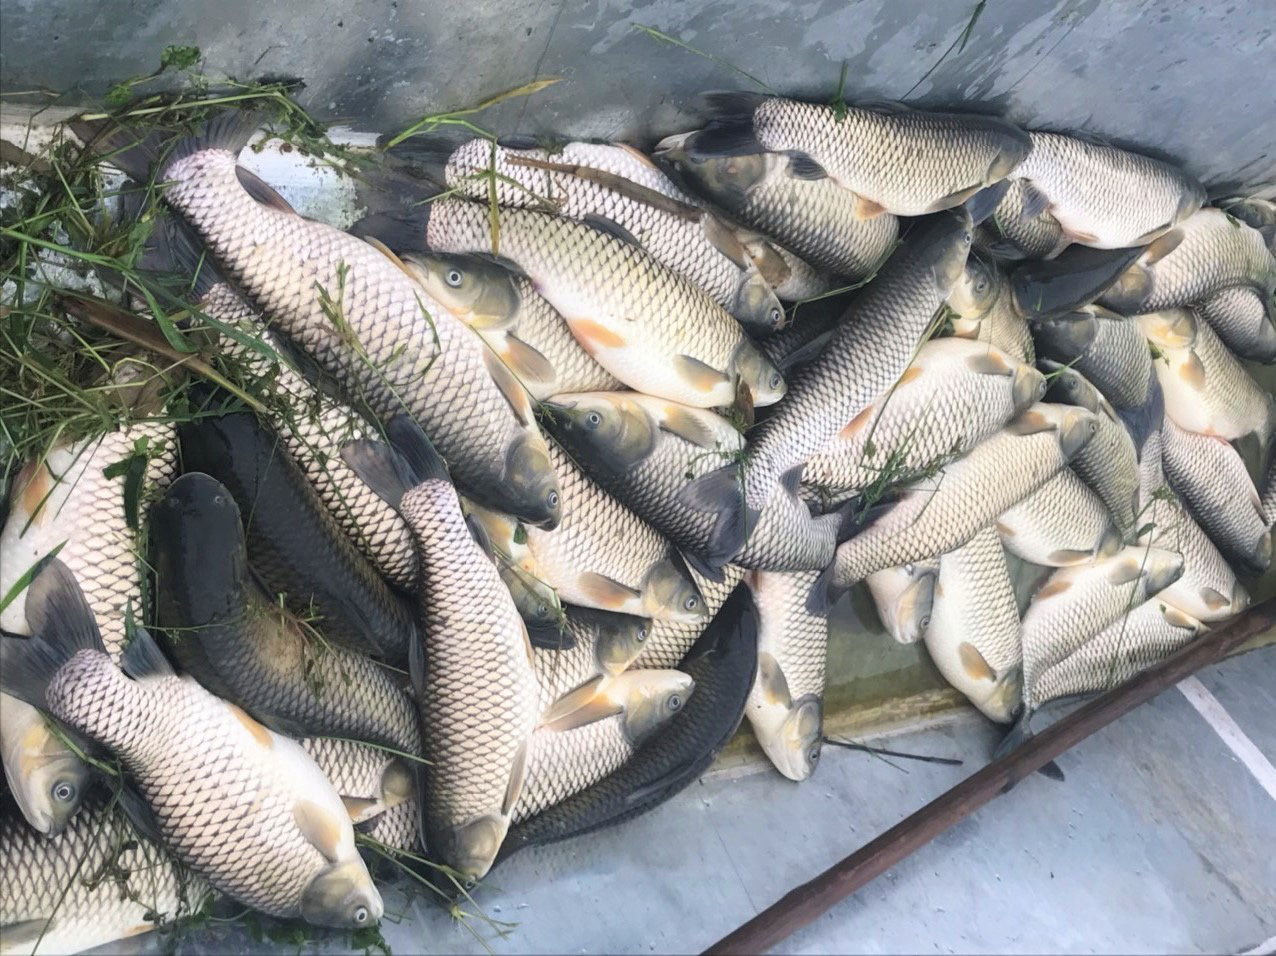 Nguyên nhân được cho dẫn đến cá chết nhiều trên sông Đà